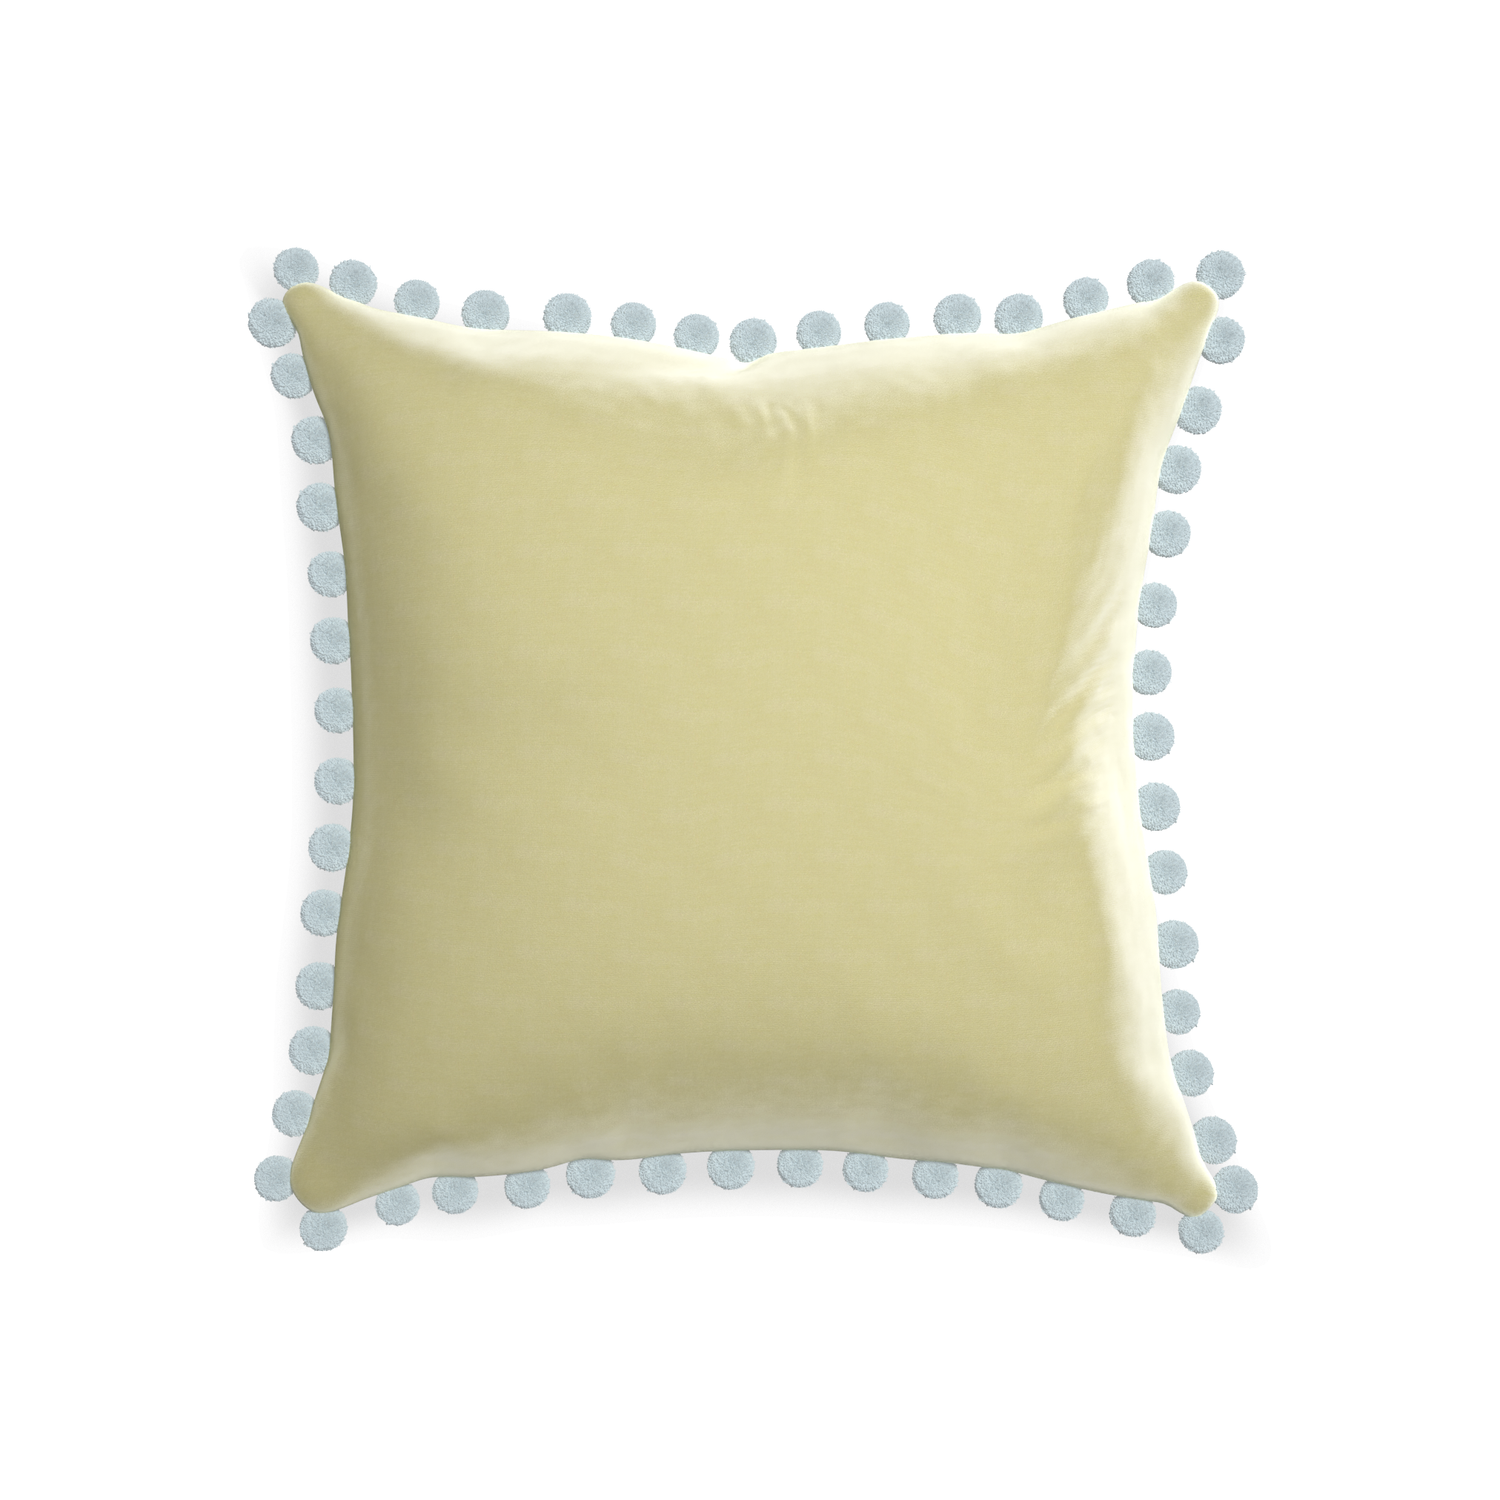 20-square pear velvet custom pillow with powder pom pom on white background